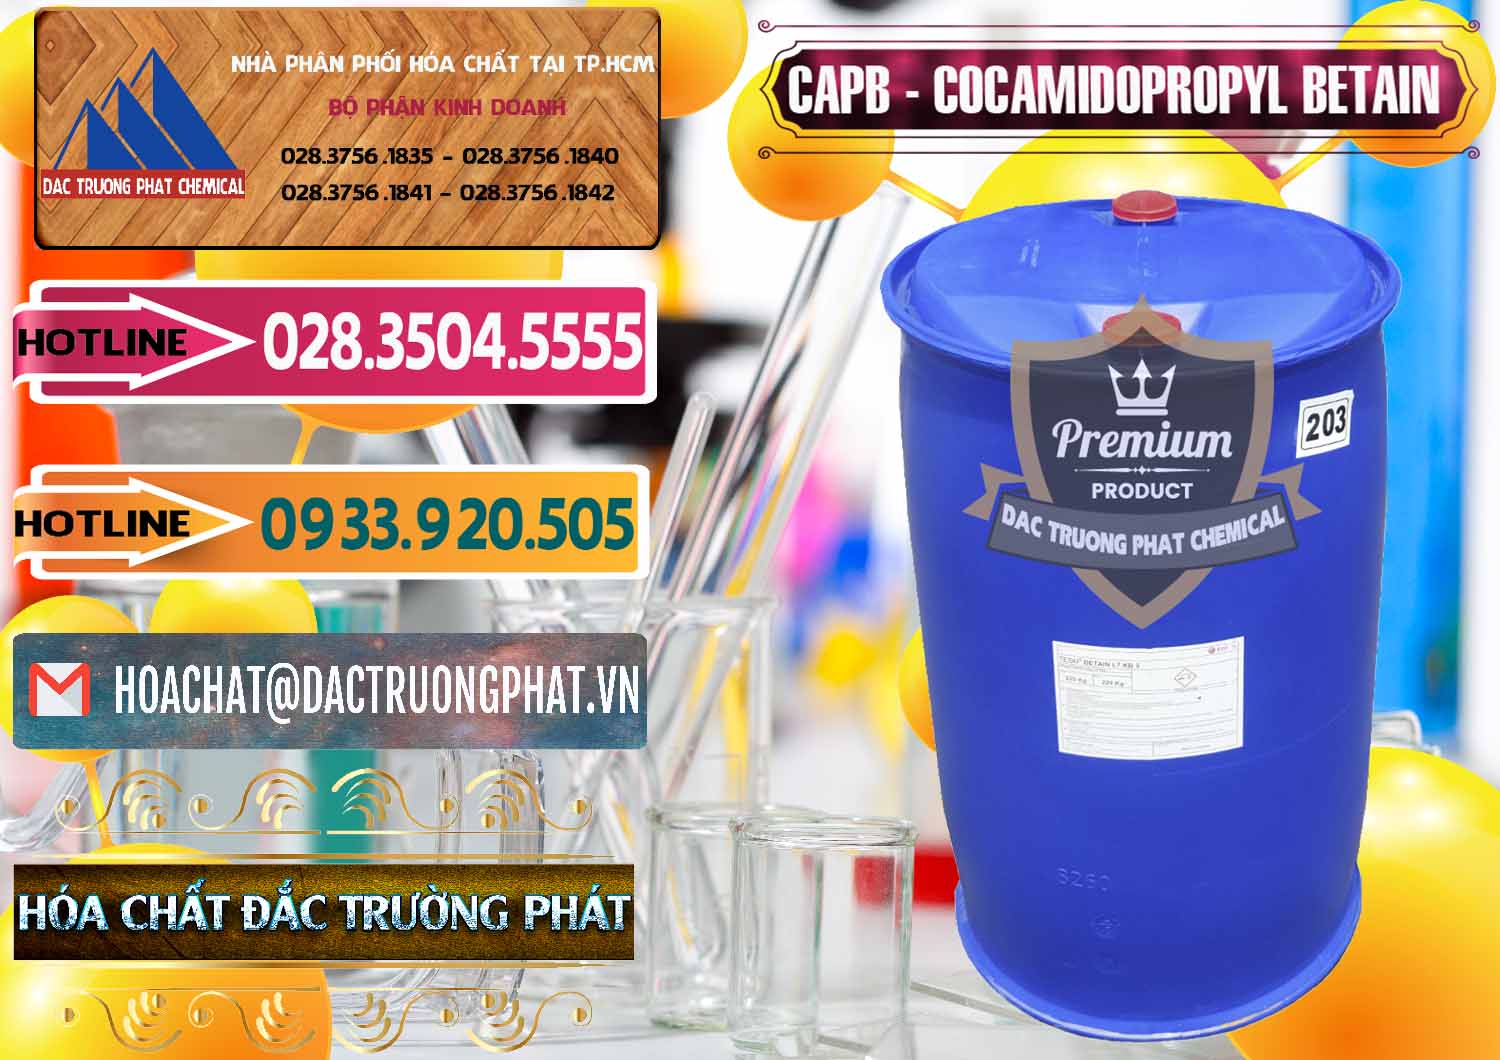 Cty chuyên bán ( cung ứng ) Cocamidopropyl Betaine - CAPB Tego Indonesia - 0327 - Đơn vị chuyên cung cấp - bán hóa chất tại TP.HCM - dactruongphat.vn